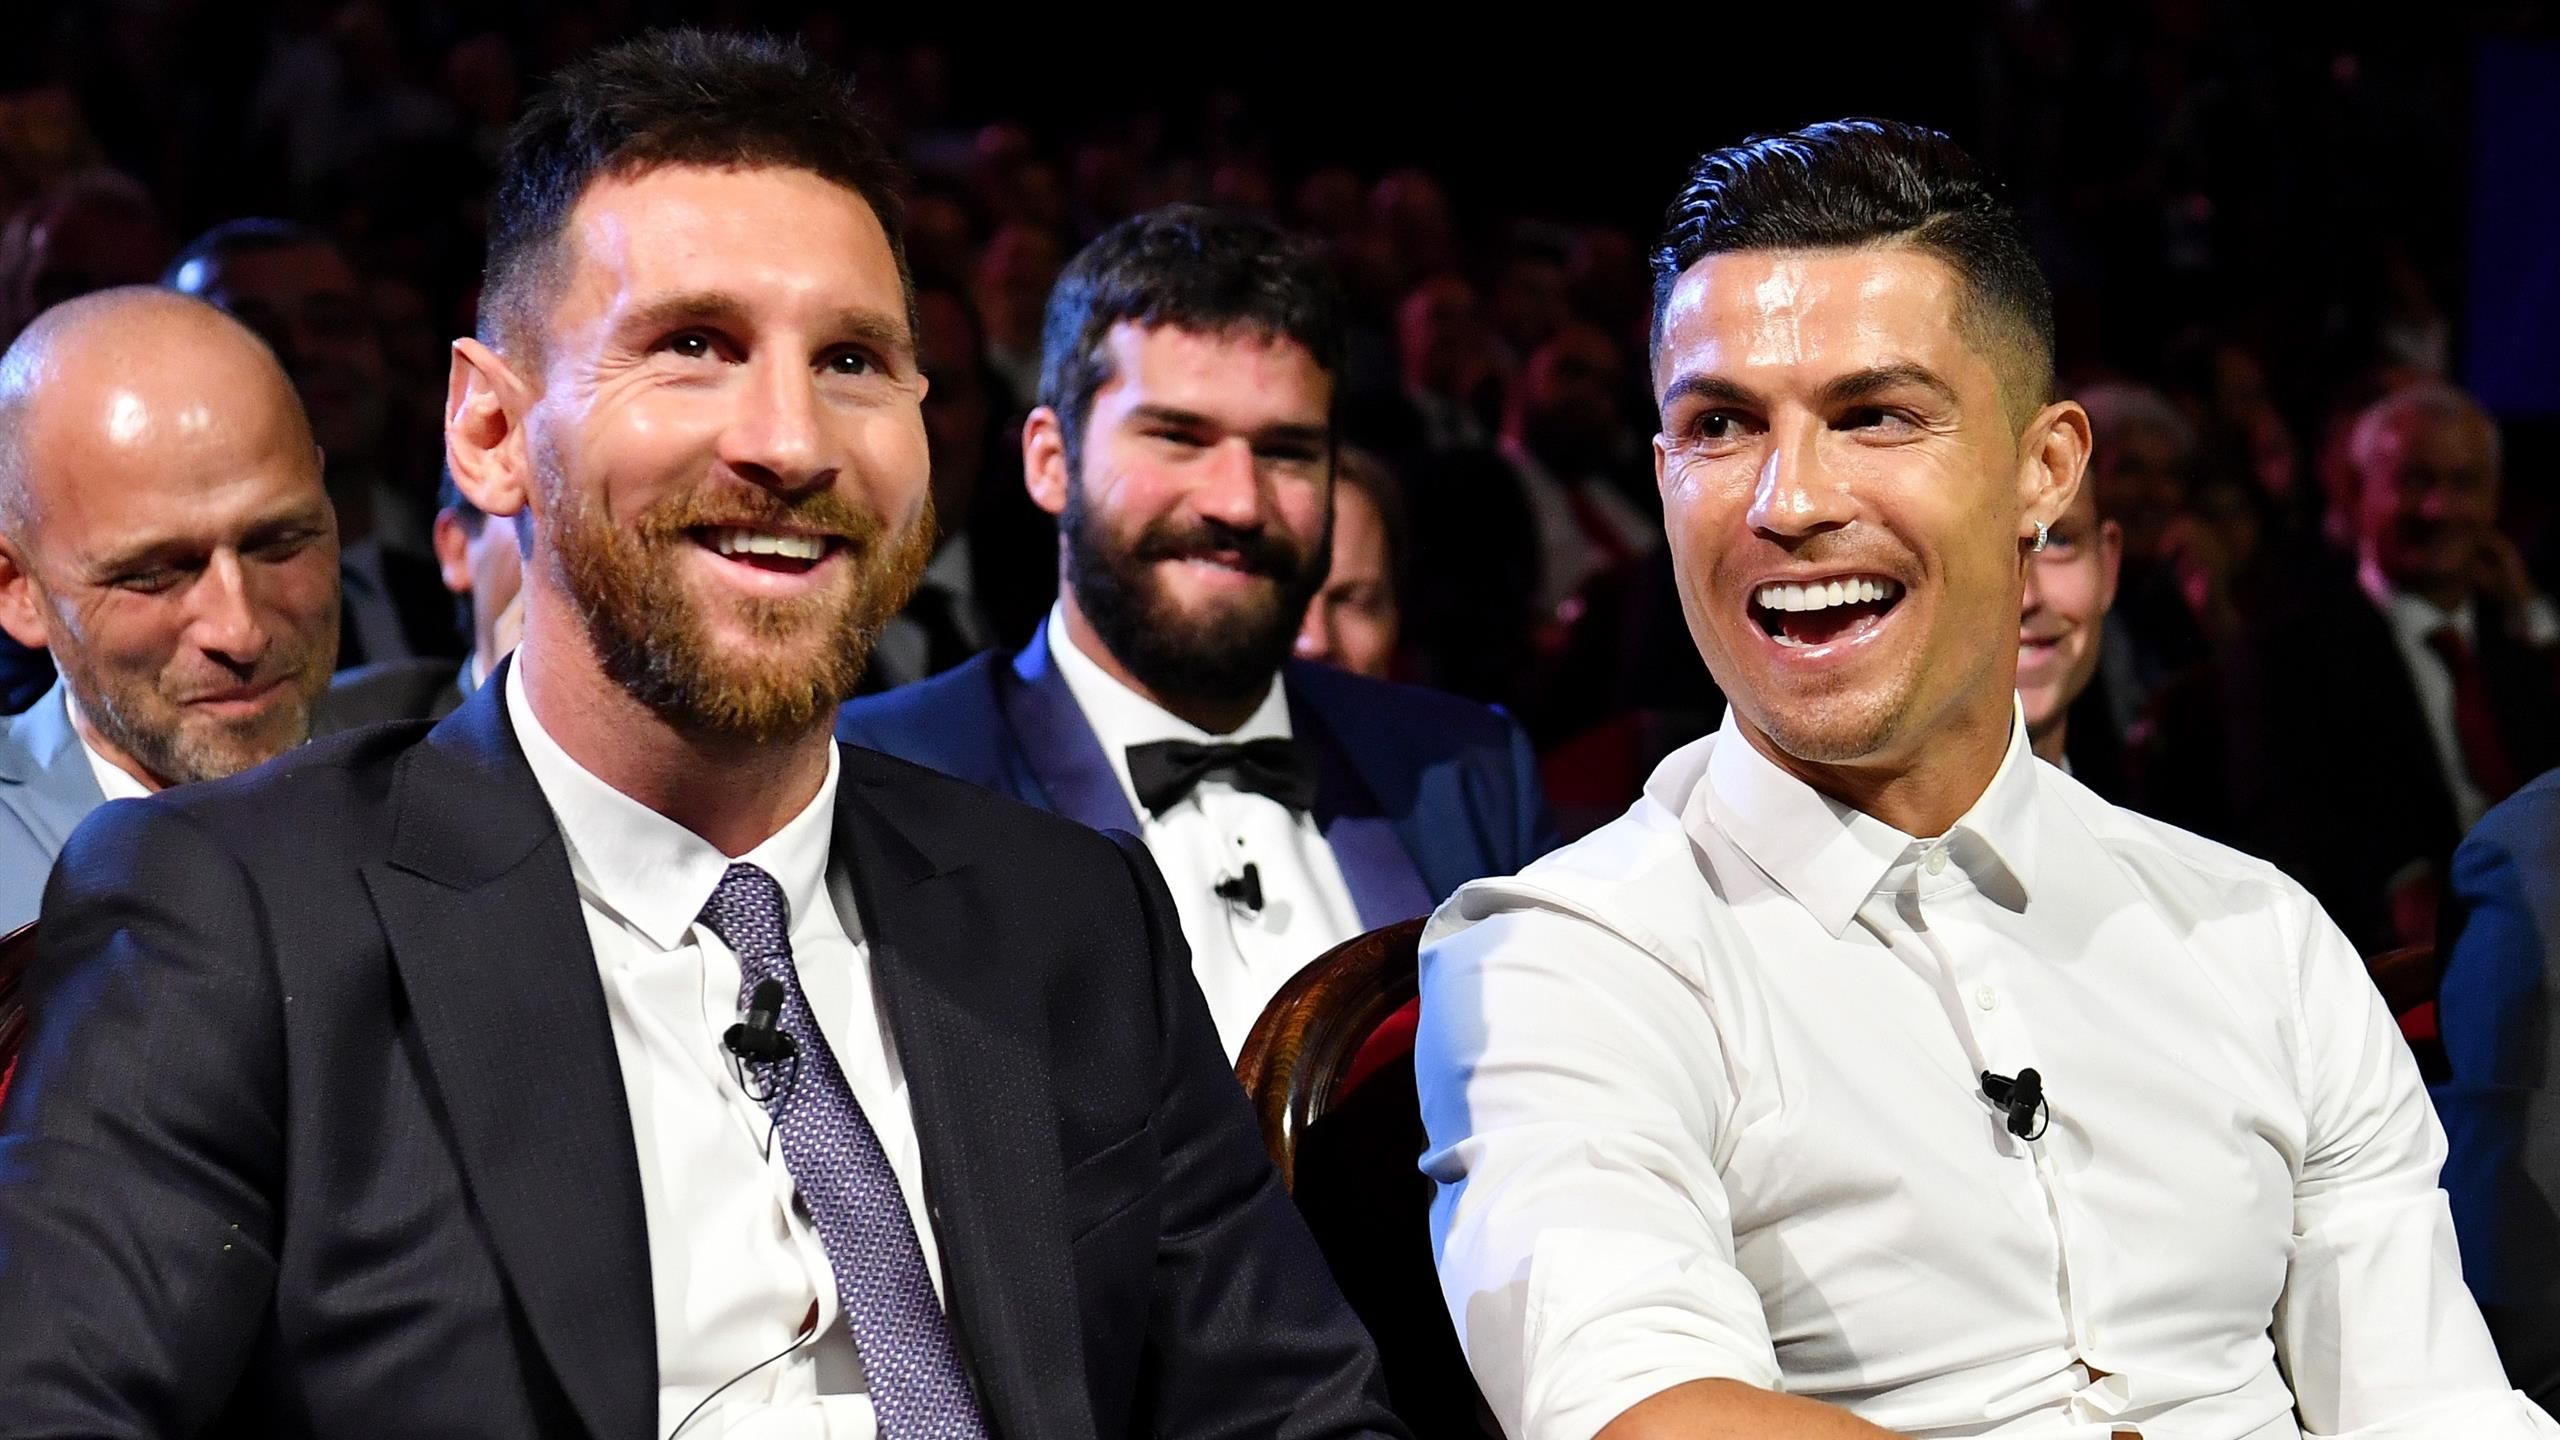 Mondial-2018: la dernière chance pour Messi et Ronaldo – L'Express